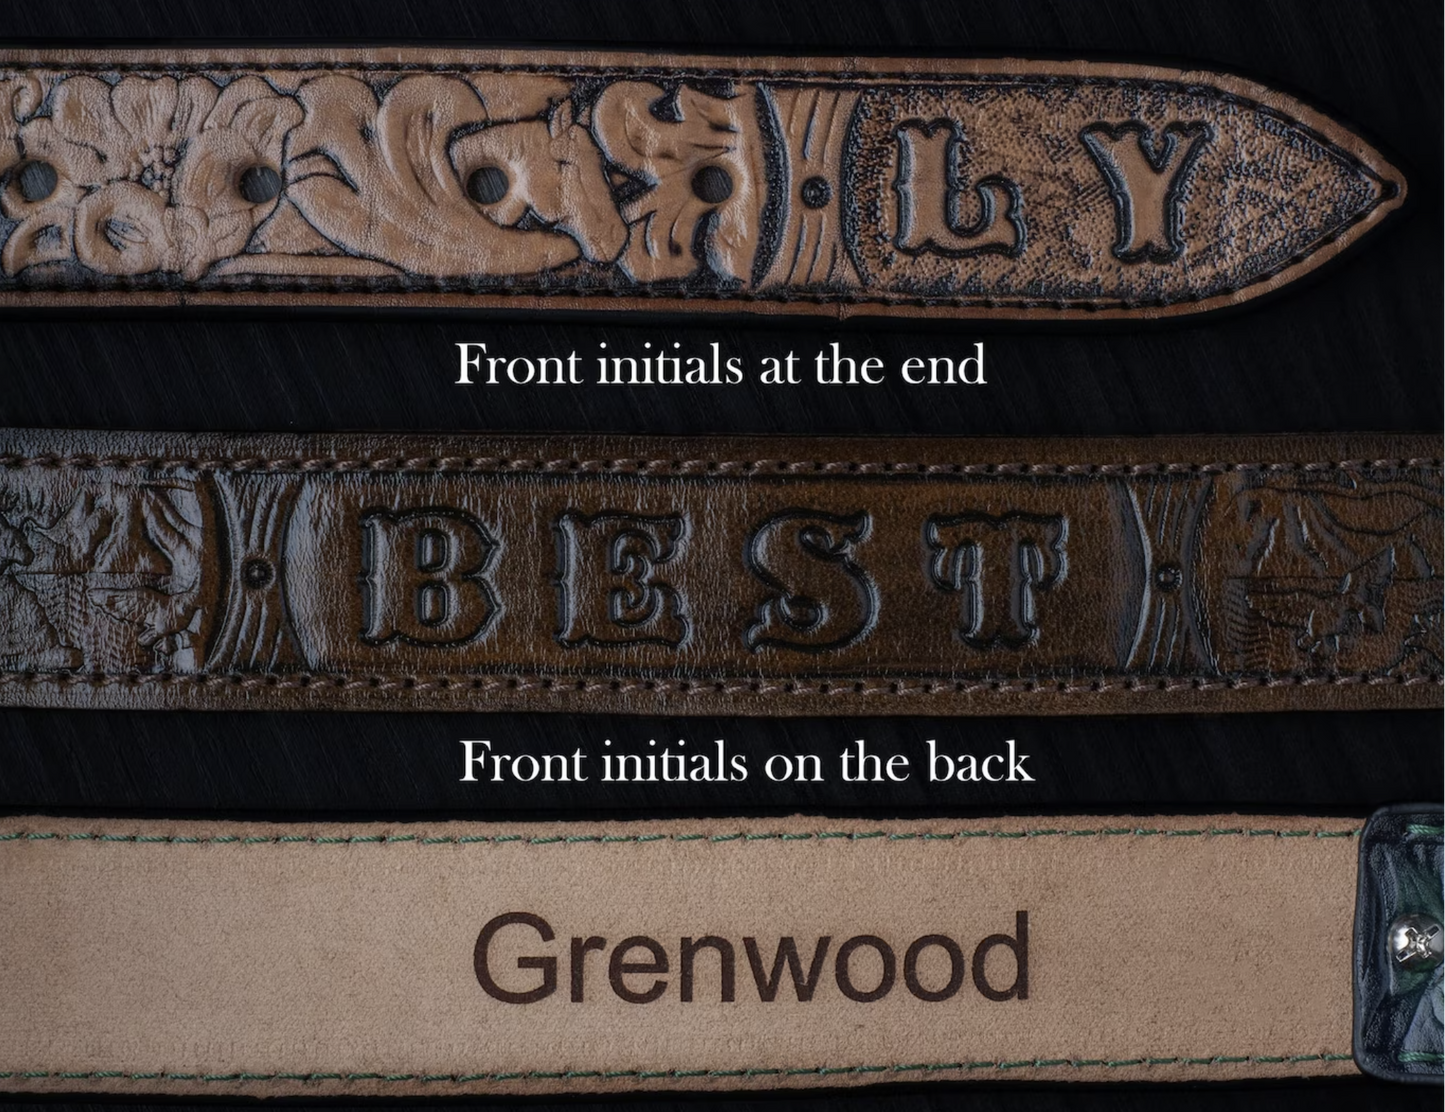 Custom leather belts